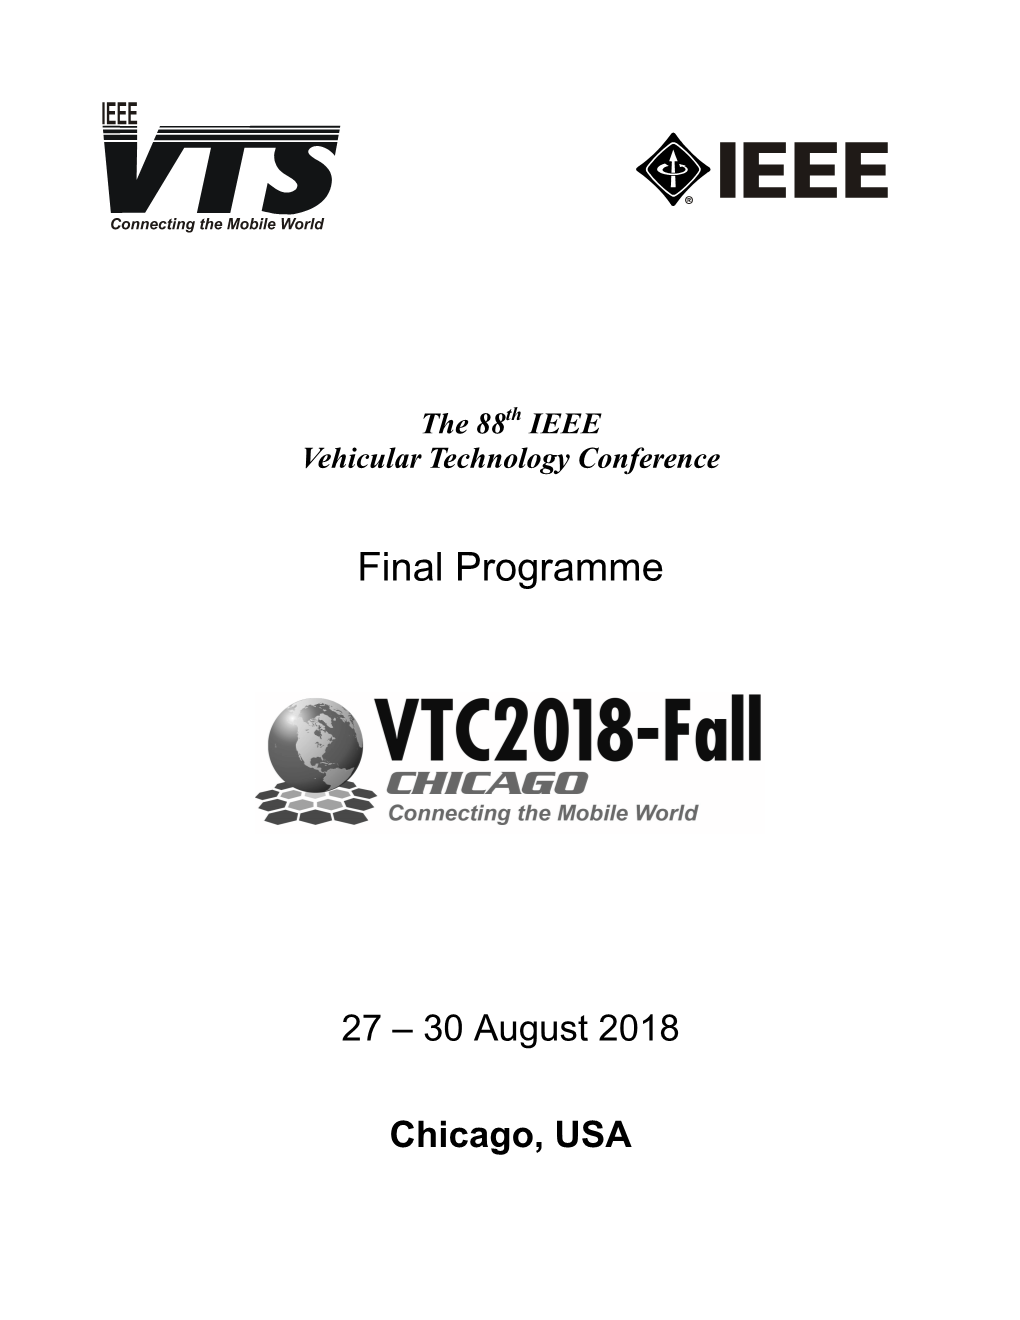 VTC2018-Fall Final Program